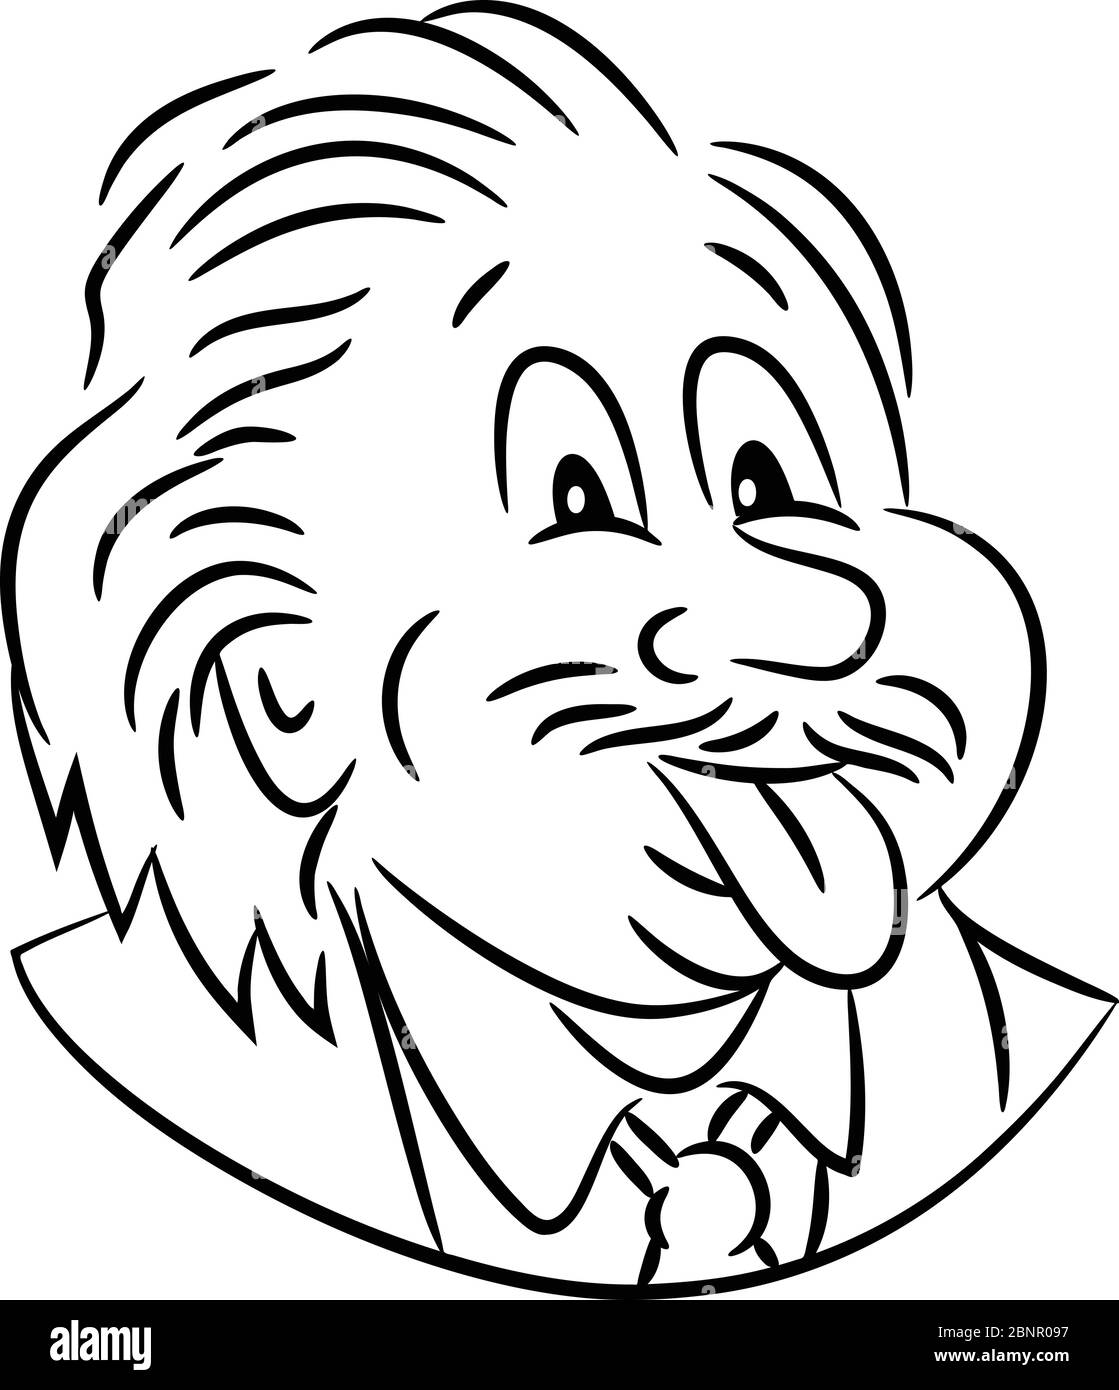 Schwarz-Weiß Cartoon-Stil Illustration des Kopfes von nerdy Genie Wissenschaftler Albert Einstein seine Zunge aus der Front auf isoliert whi gesehen Stock Vektor